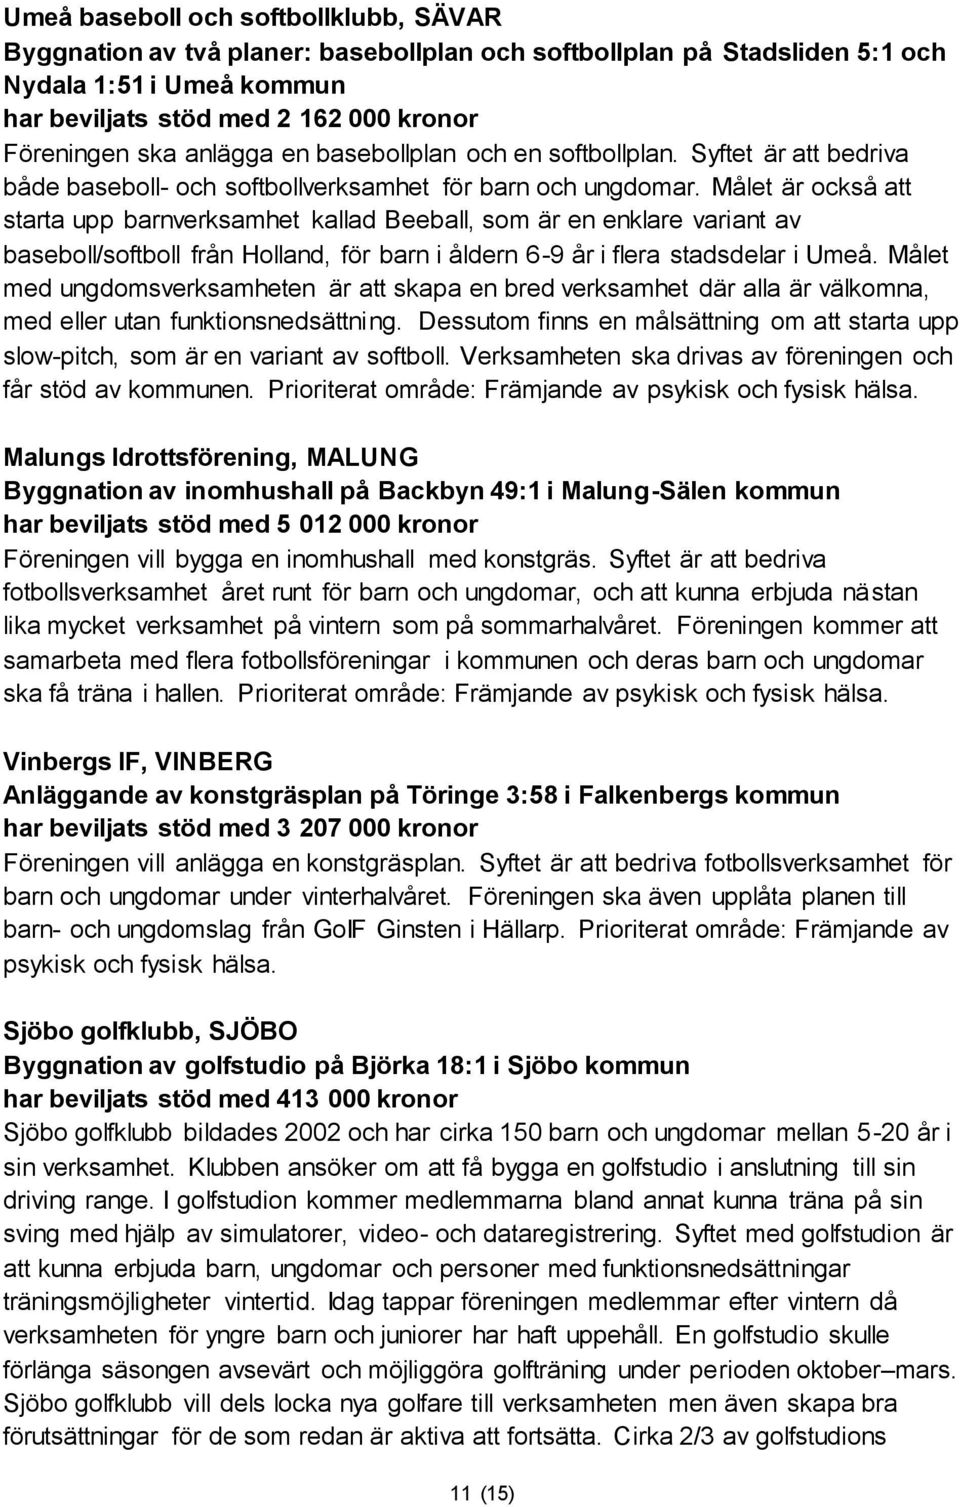 Målet är också att starta upp barnverksamhet kallad Beeball, som är en enklare variant av baseboll/softboll från Holland, för barn i åldern 6-9 år i flera stadsdelar i Umeå.